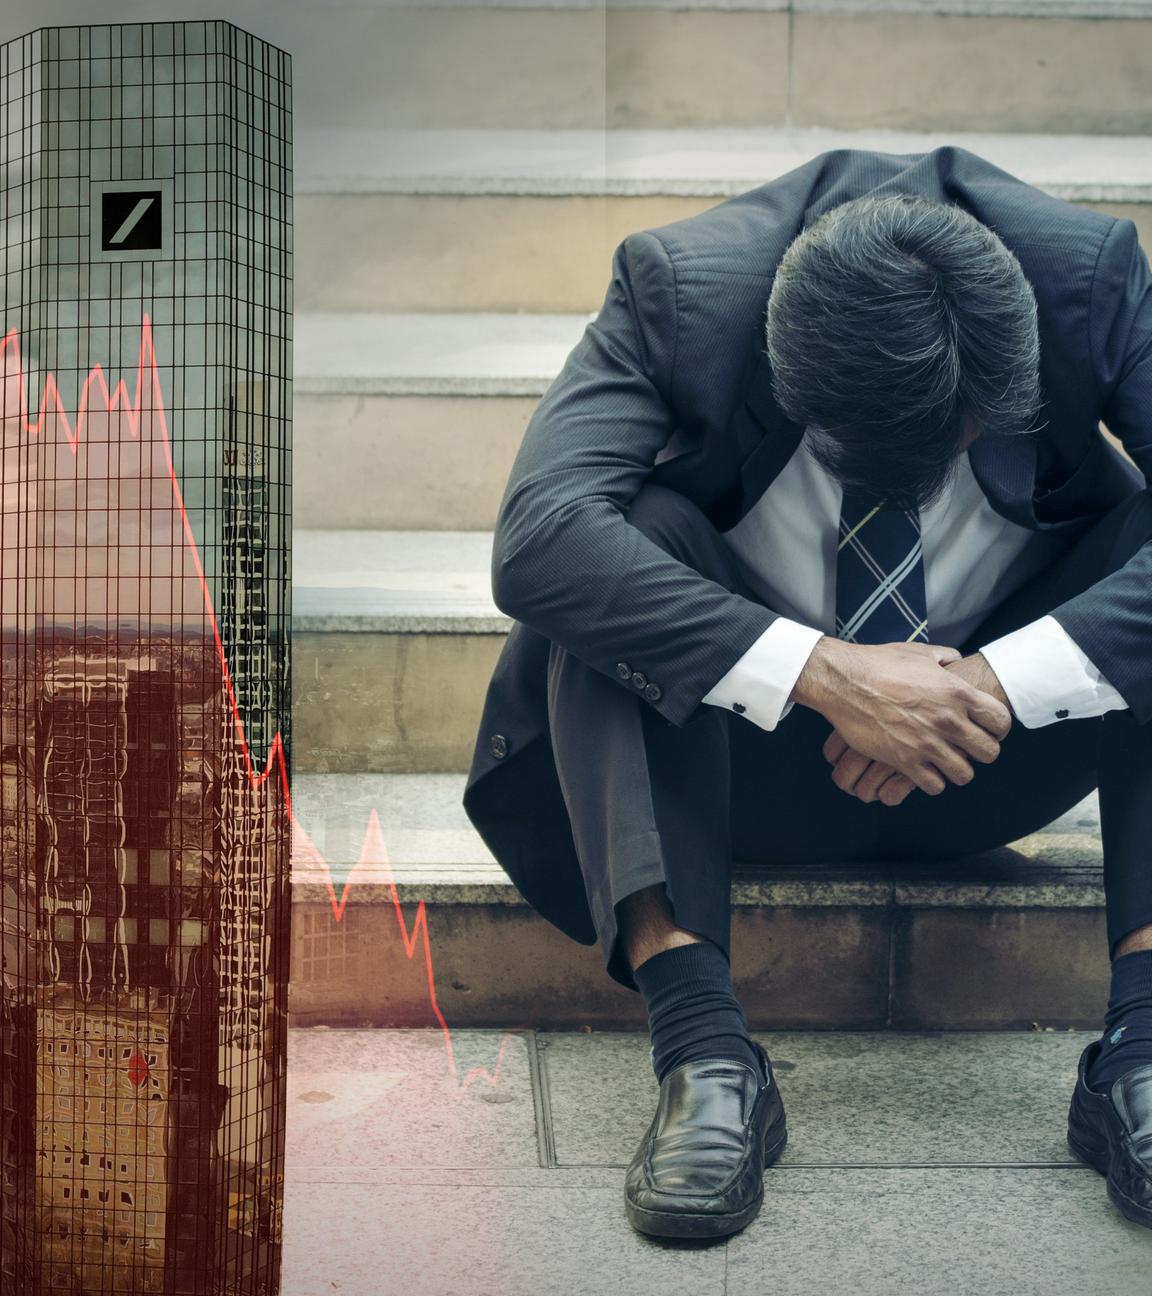  Links im Bild die Türme der Deutschen Bank in Frankfurt am Main, dazu ein rot schimmernder fallender Aktienkurs; zentral im Bild ein Mann im Anzug, der mit gesenktem Kopf auf einer Treppe sitzt; rechts Schilder für den Hausverkauf einer Zwangsversteigerung.